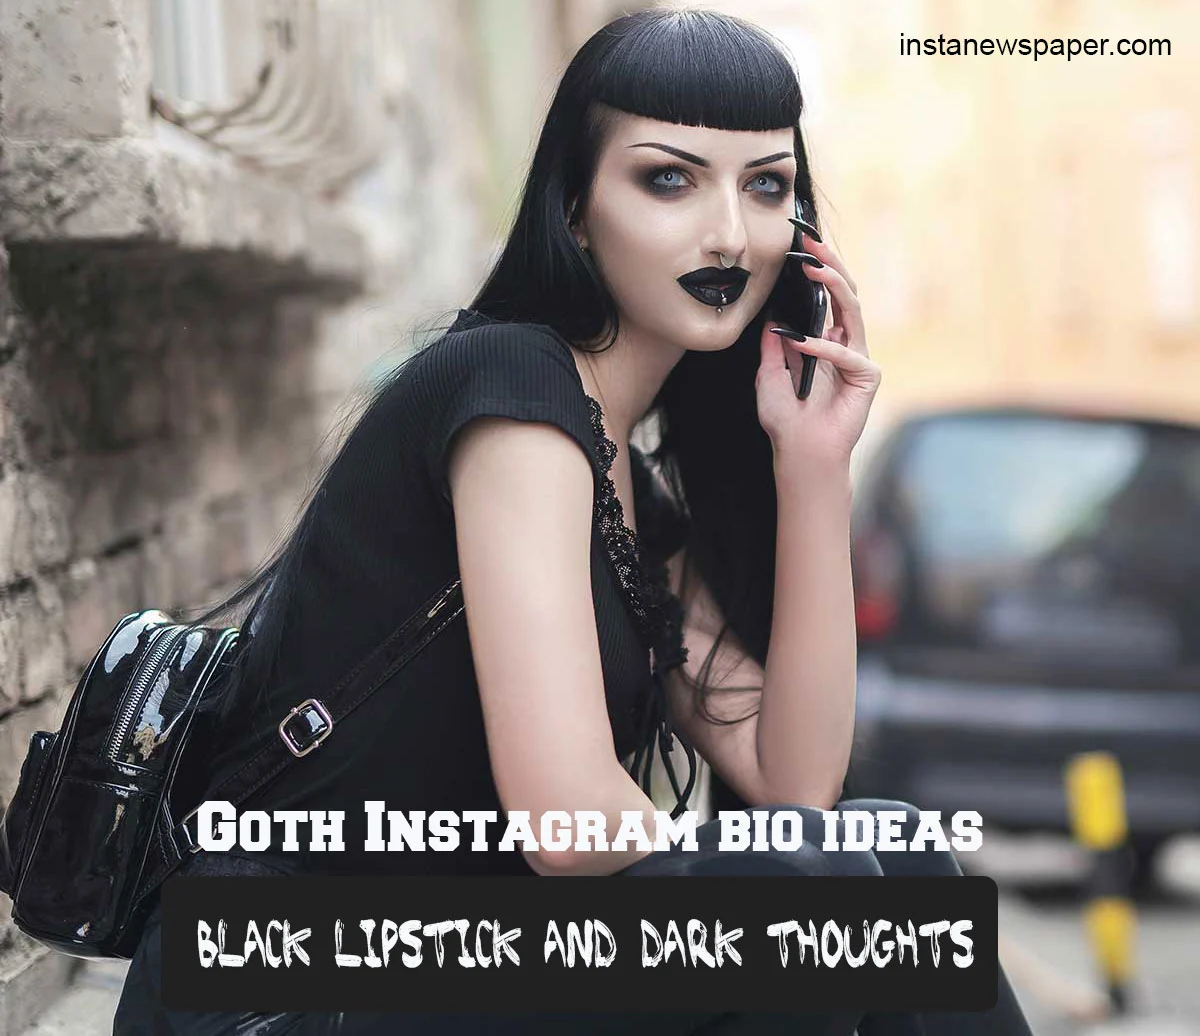 Goth Instagram bio ideas for girl